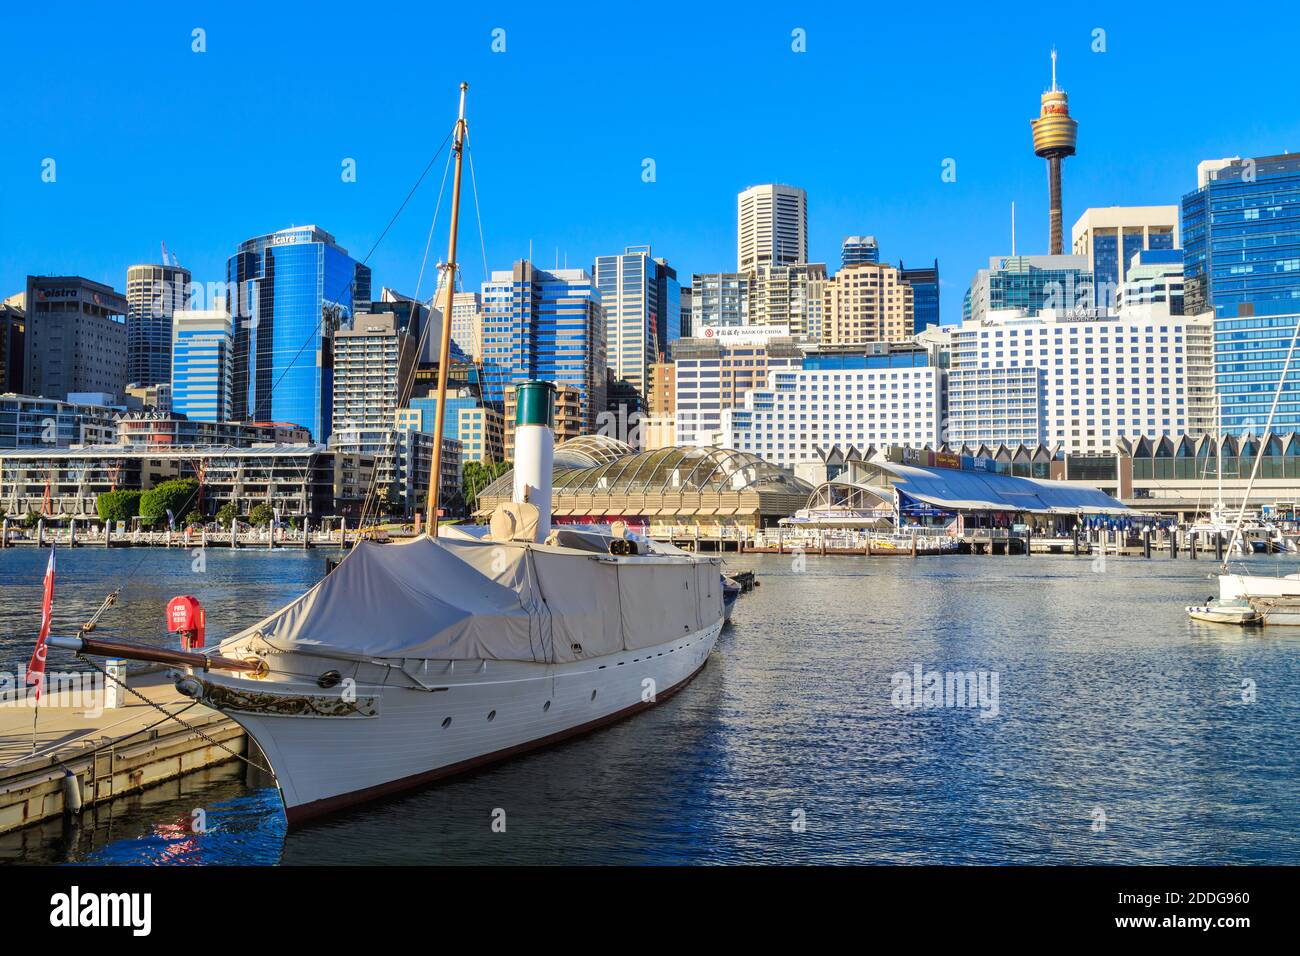 Darling Harbour, Sydney, Australia. Lo storico yacht a vapore 'Ena' (costruito nel 1900) galleggia in acqua con lo skyline di Sydney alle spalle Foto Stock